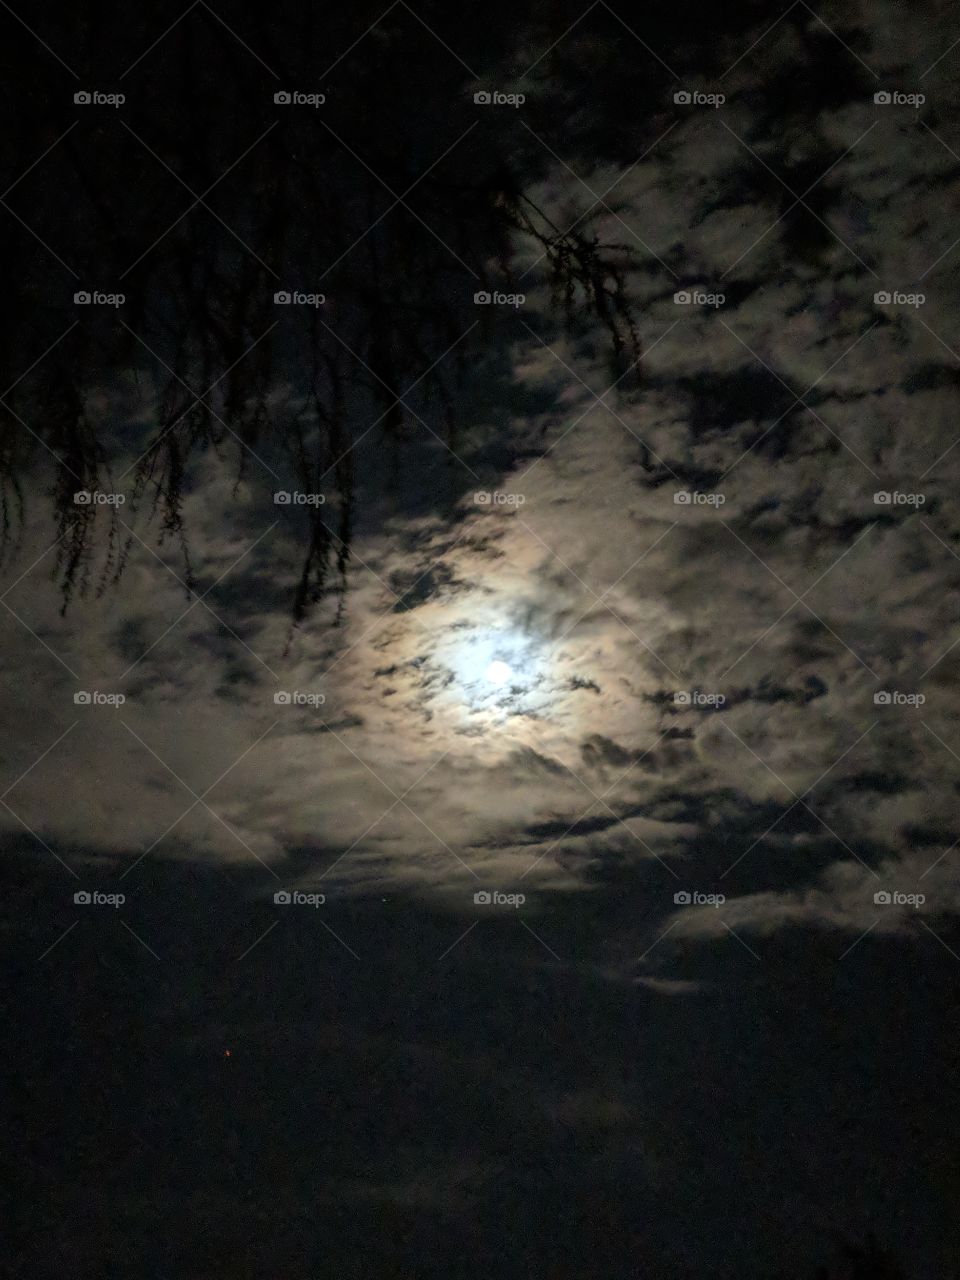 Night moon